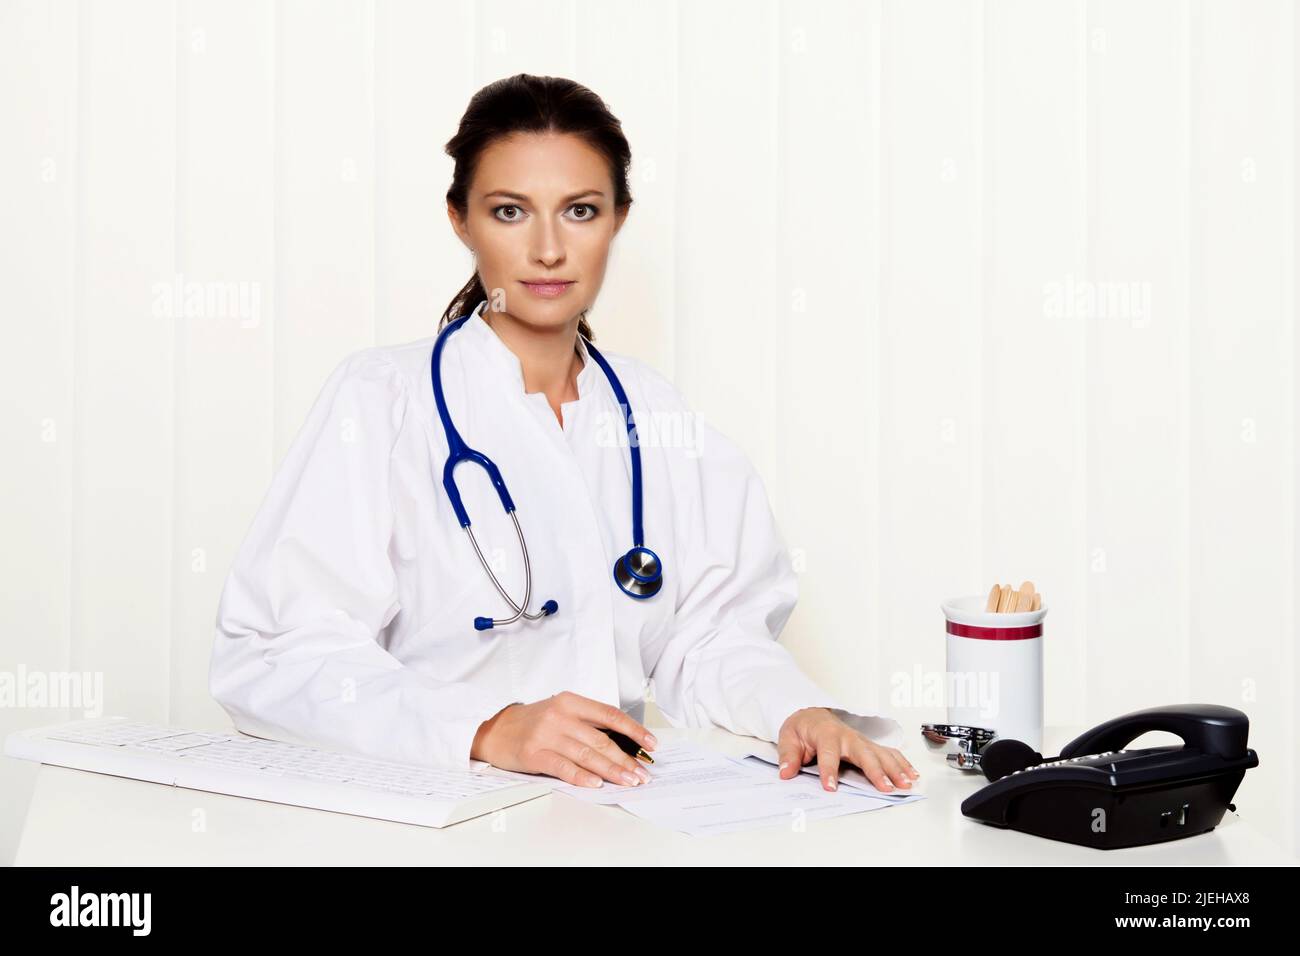 Junge Ärztin in ihrer Arztpraxis am Schreibtisch Foto de stock